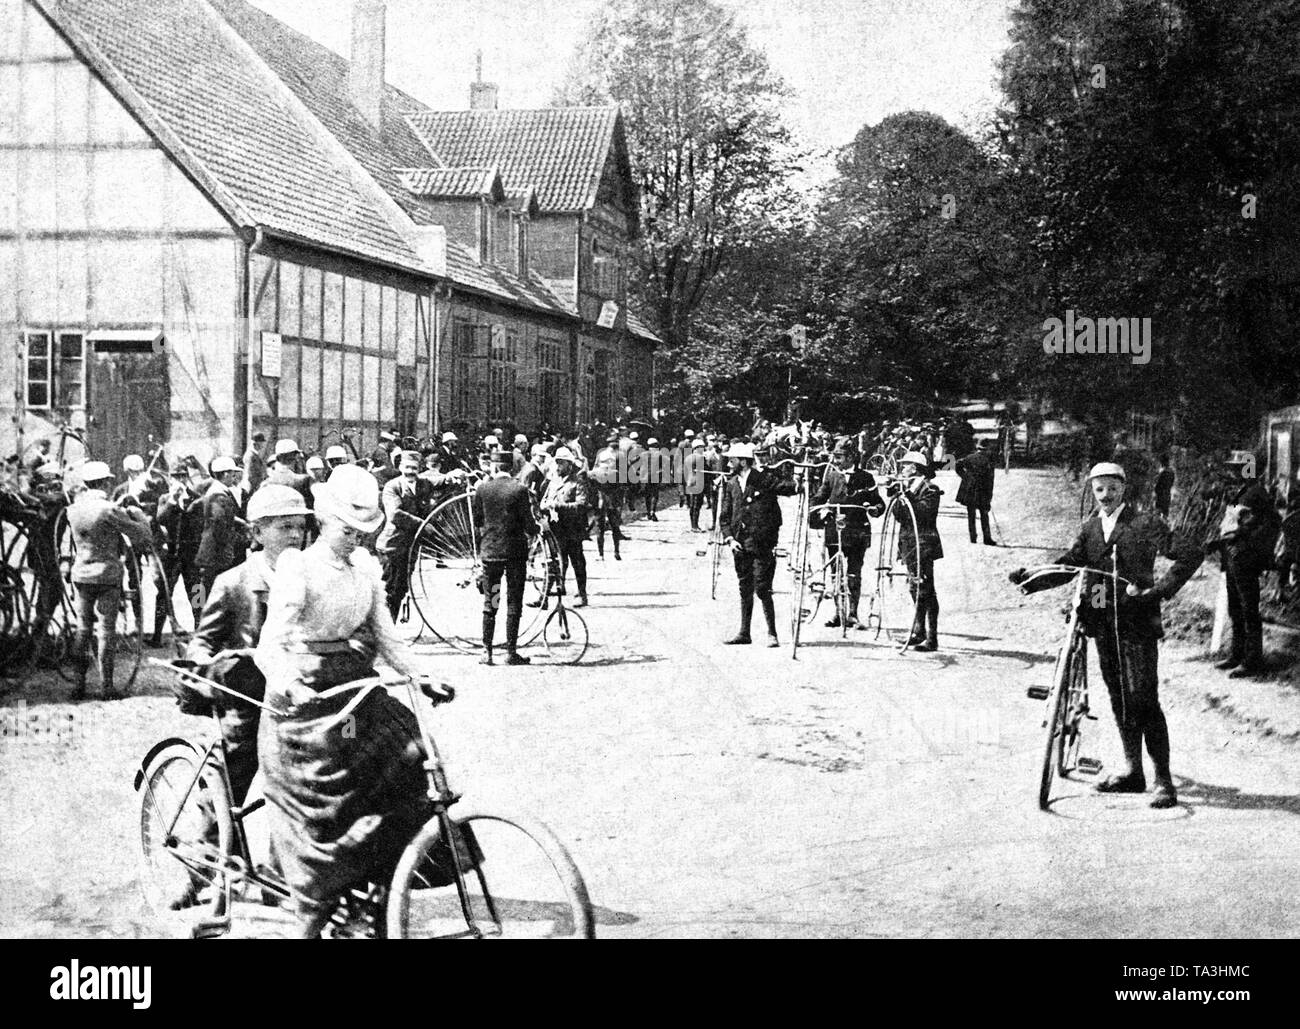 Eine Gruppe von Radfahrern in Friedrichsruh, den Ruhestand Sitz von Otto von Bismarck. Vielleicht der Besuch der Mitglieder einer Cycling Club. Von einer zeitgenössischen Publikation. Stockfoto